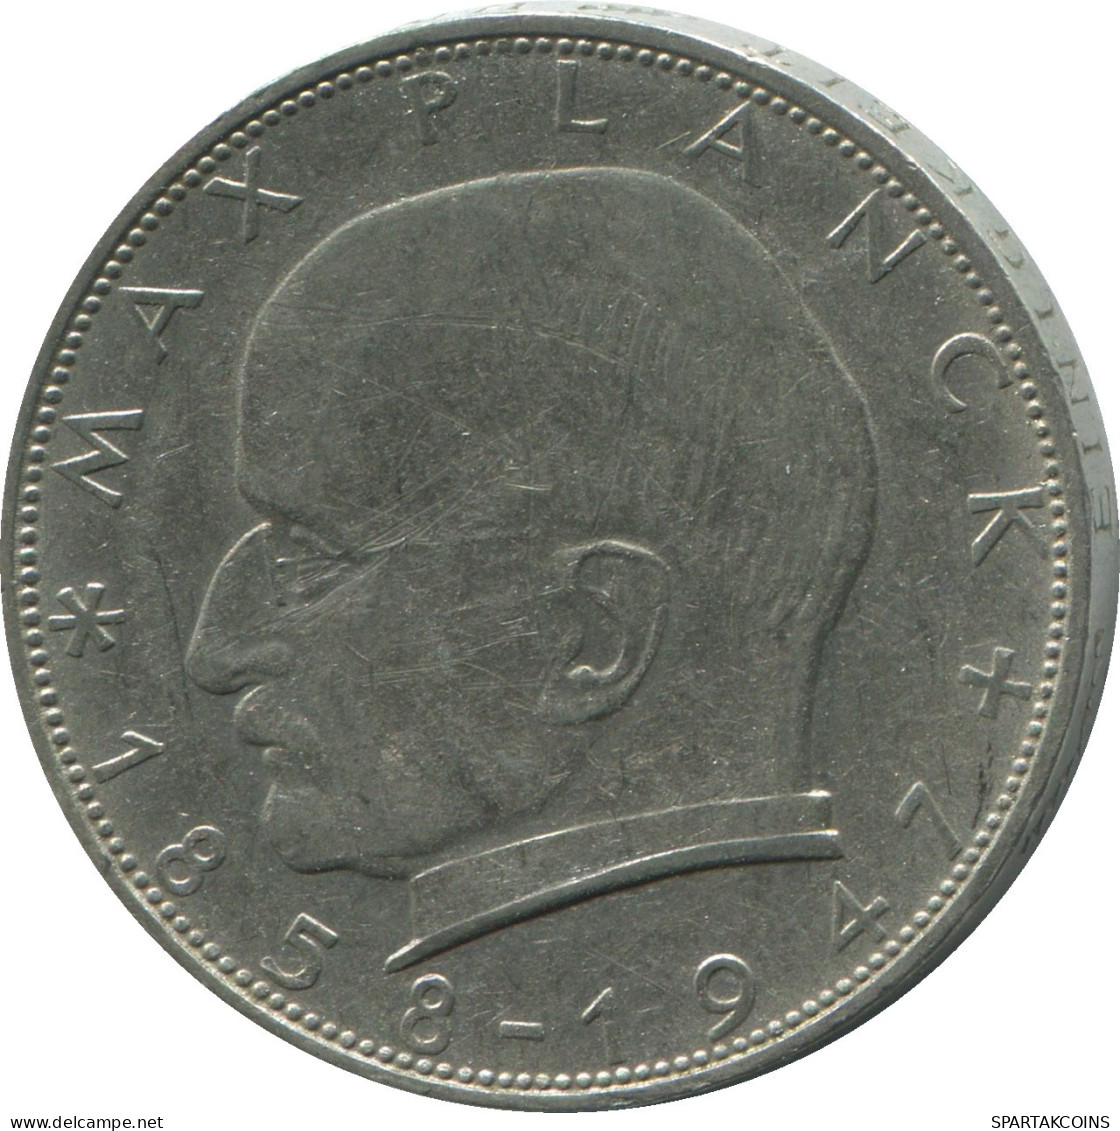 2 DM 1962 F M.Planck WEST & UNIFIED GERMANY Coin #DE10344.5.U.A - 2 Marchi